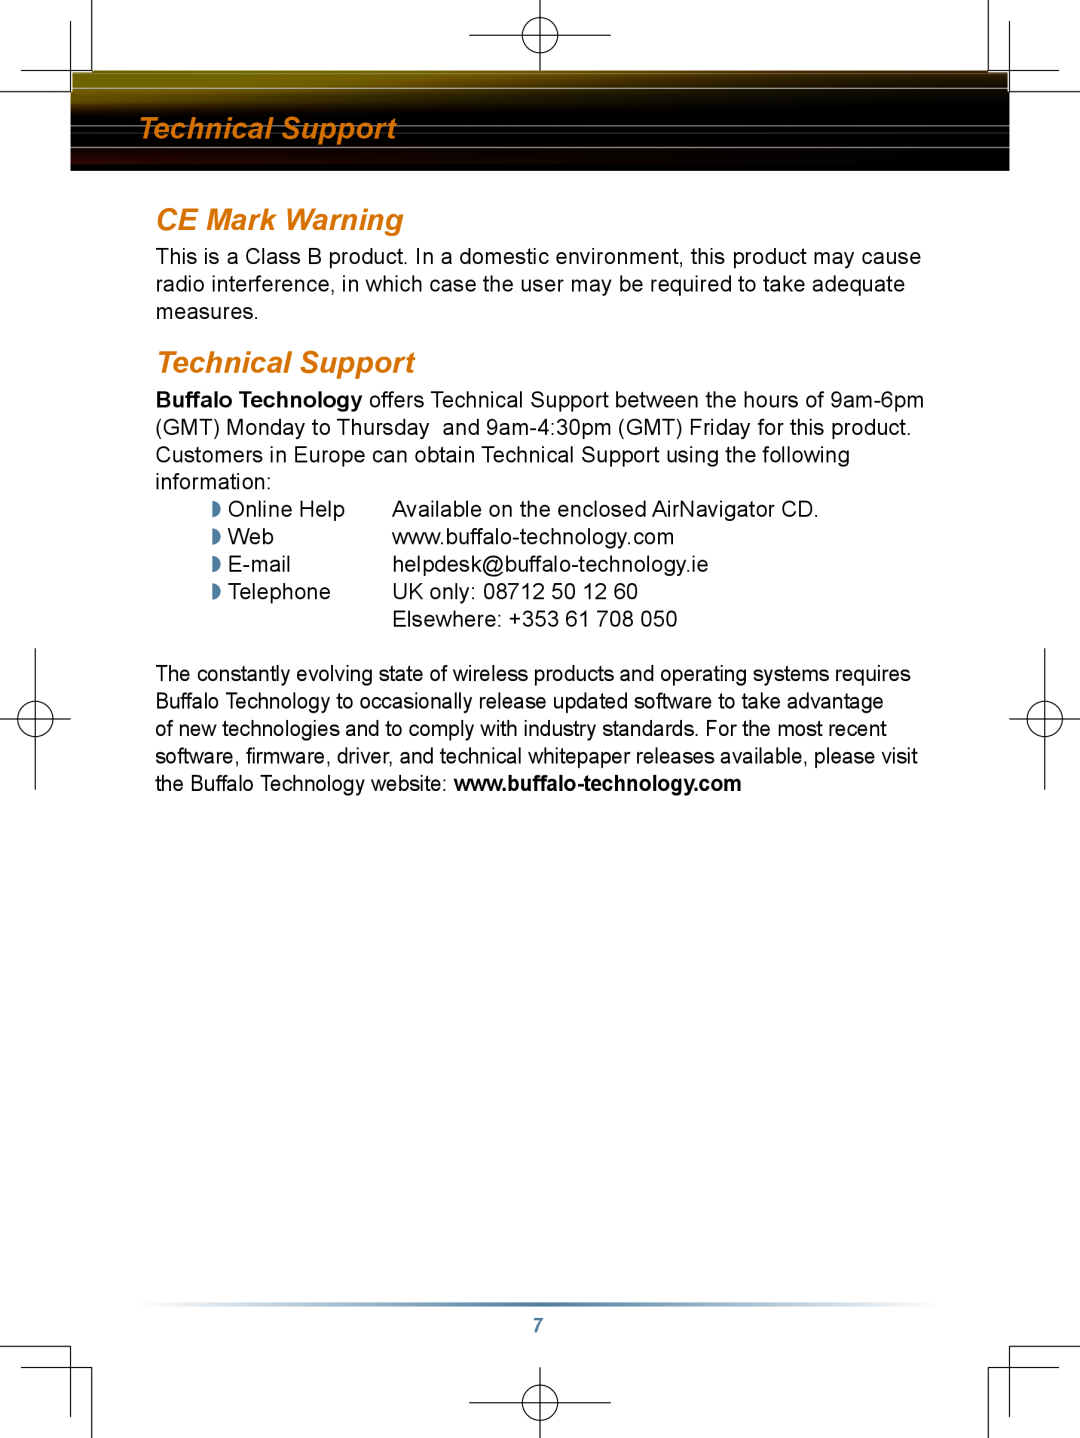 Buffalo Technology HD-HBU2 setup guide Technical Support CE Mark Warning 